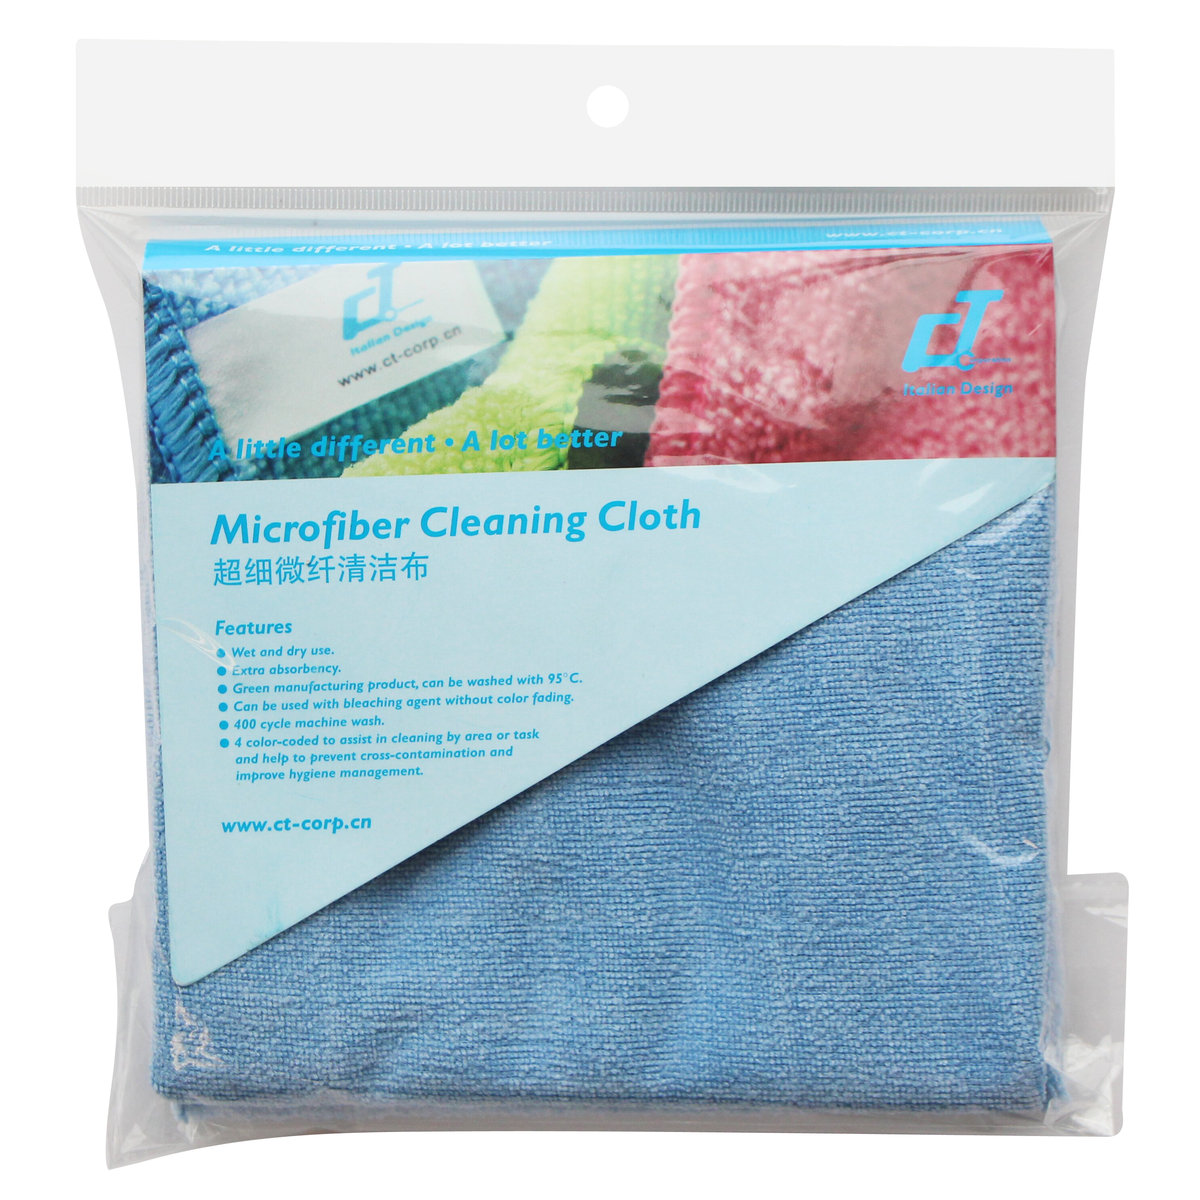 萬用微纖清潔抹布, 洗碗洗車布, 30x60cm, 2條裝, 藍色 [EC-283060B_2]